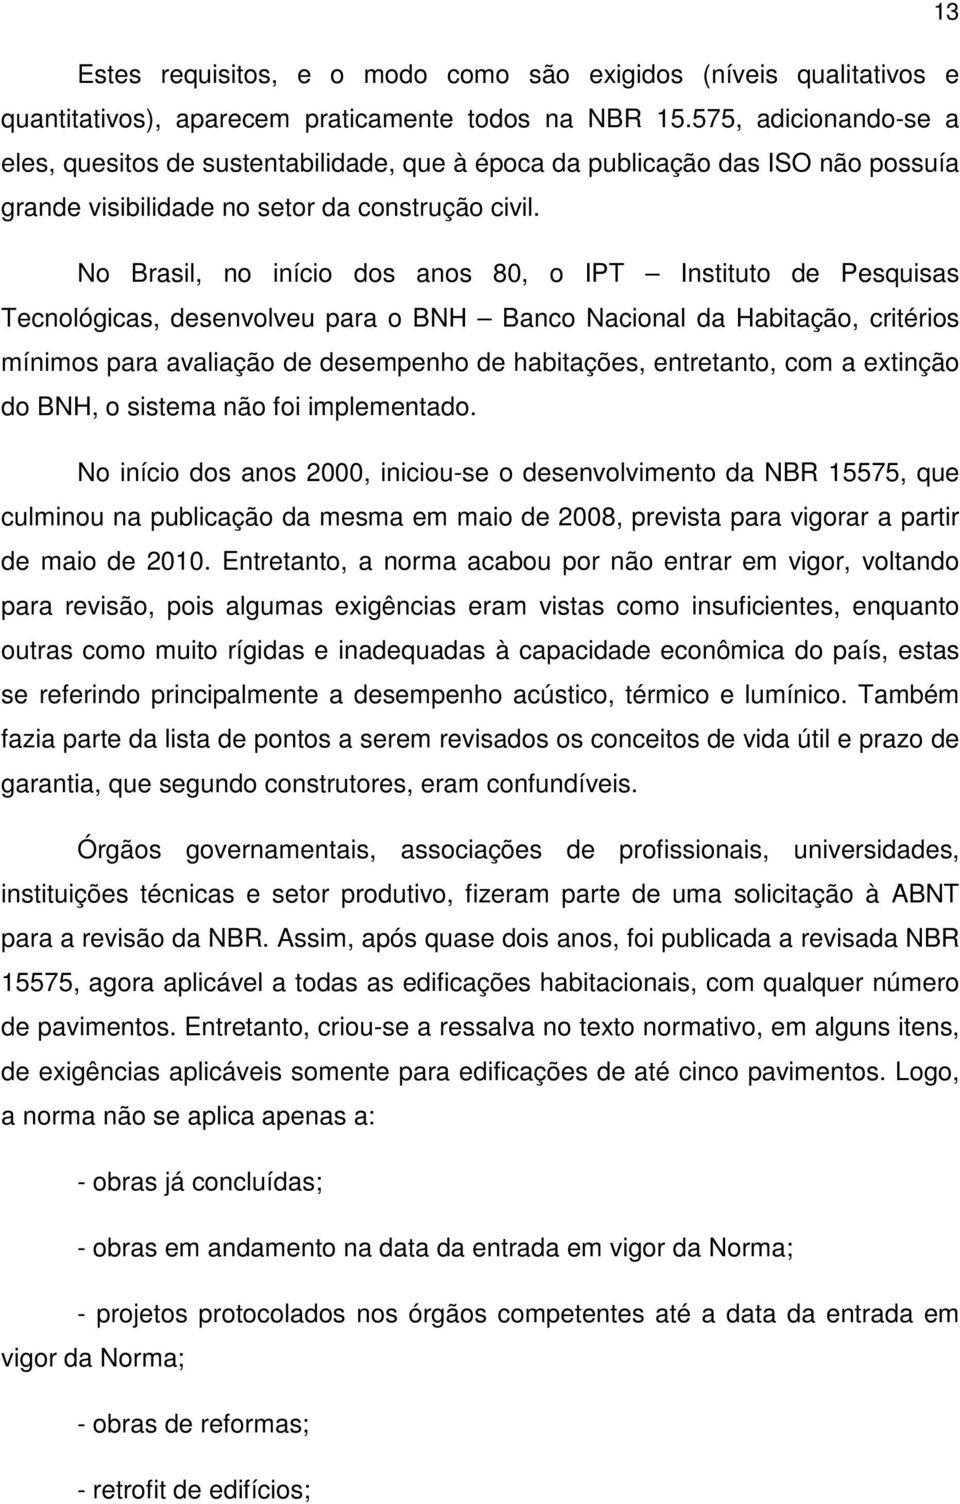 No Brasil, no início dos anos 80, o IPT Instituto de Pesquisas Tecnológicas, desenvolveu para o BNH Banco Nacional da Habitação, critérios mínimos para avaliação de desempenho de habitações,